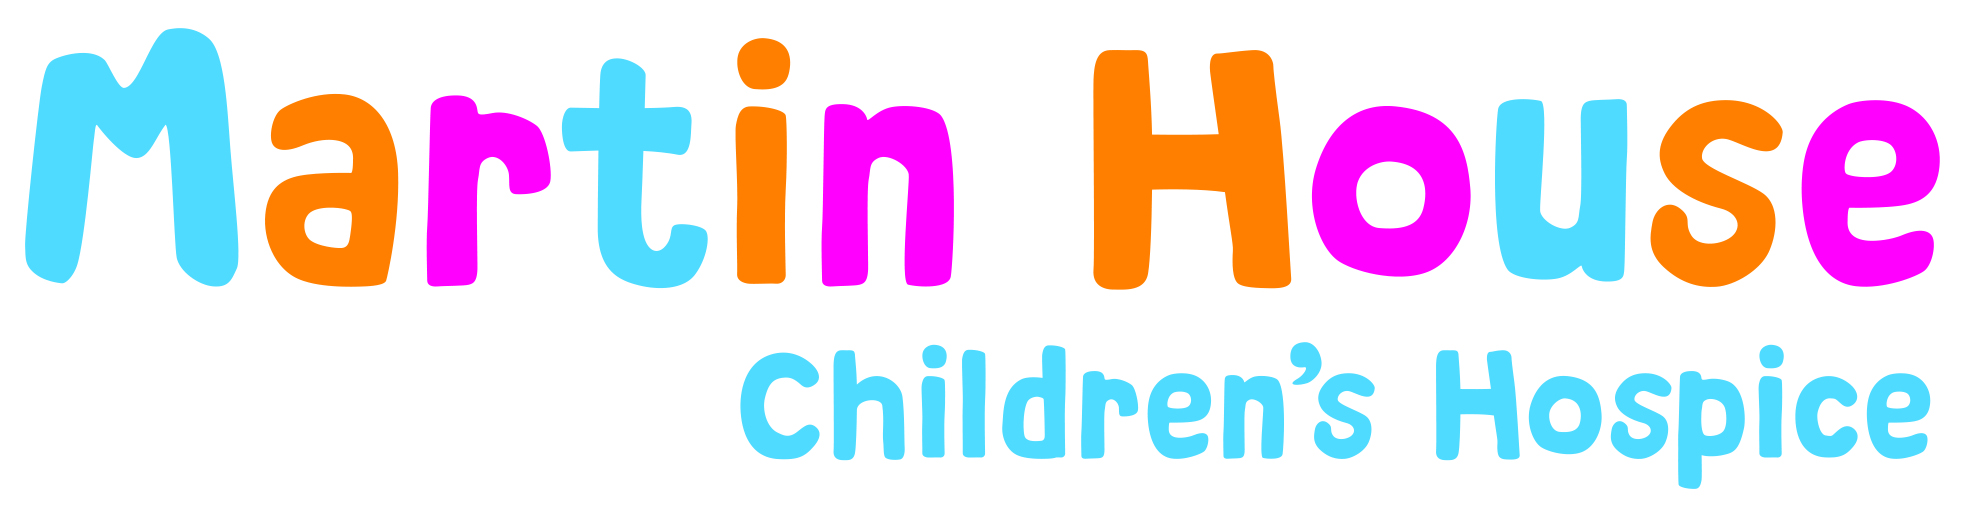 £68.26 raised for Martin House Children's Hospice -  14th February 2022: